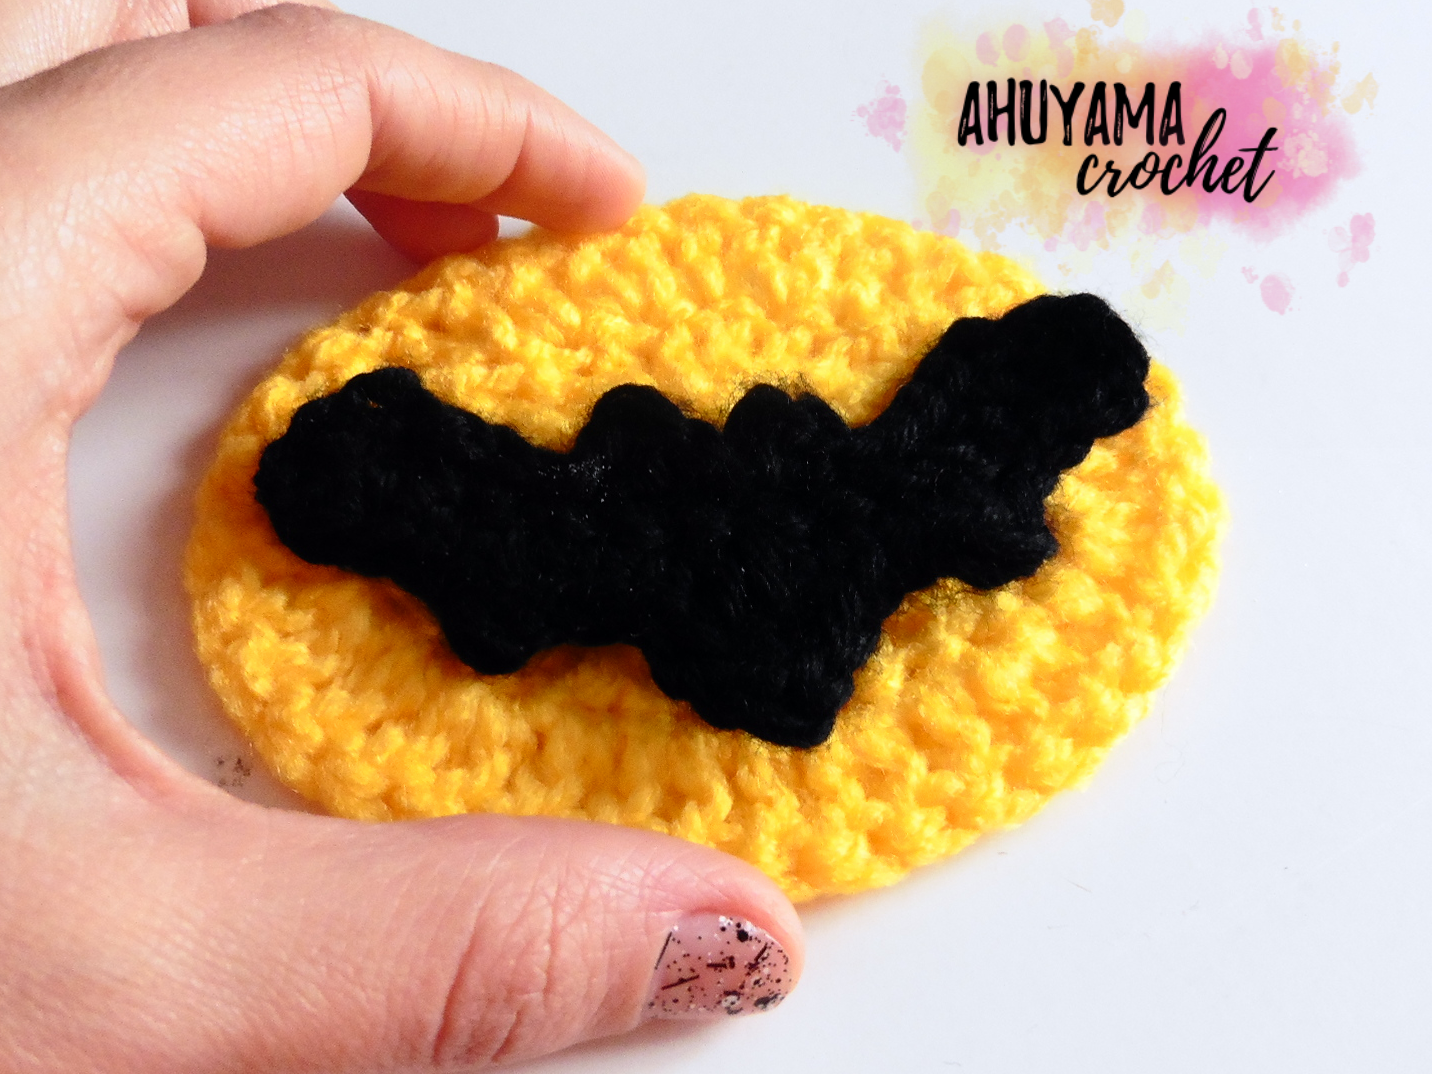 GORRO DE BATMAN A CROCHET - Ahuyama Crochet